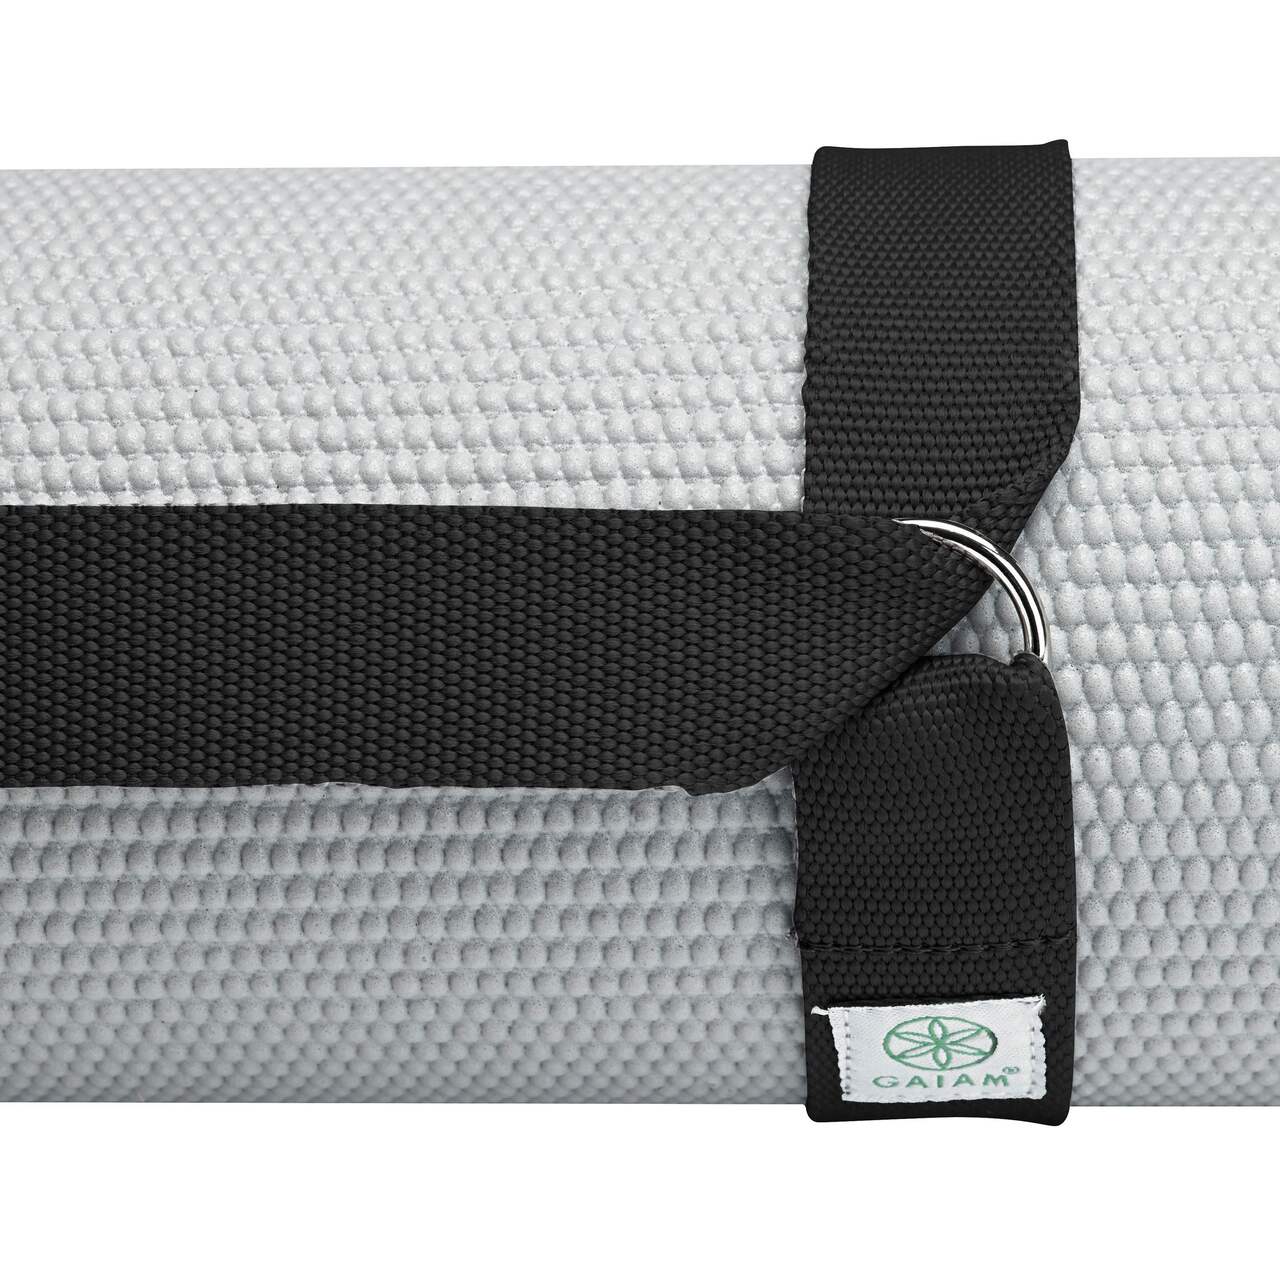 Gaiam Yoga Strap Cotton 6 Feet Grey Box - Each - Tom Thumb